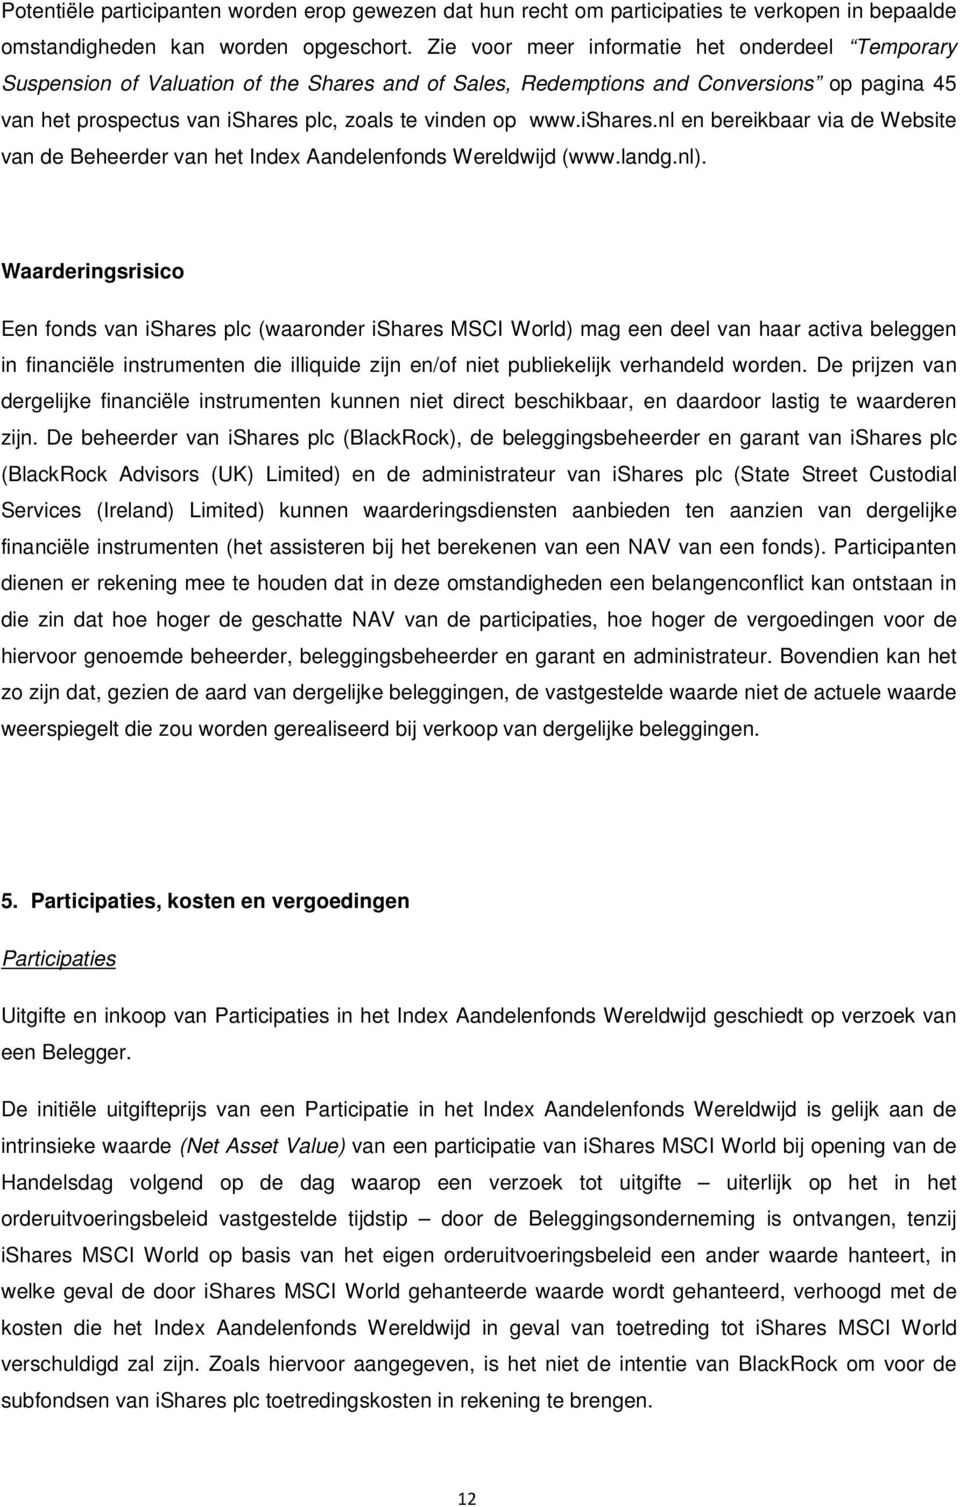 www.ishares.nl en bereikbaar via de Website van de Beheerder van het Index Aandelenfonds Wereldwijd (www.landg.nl).